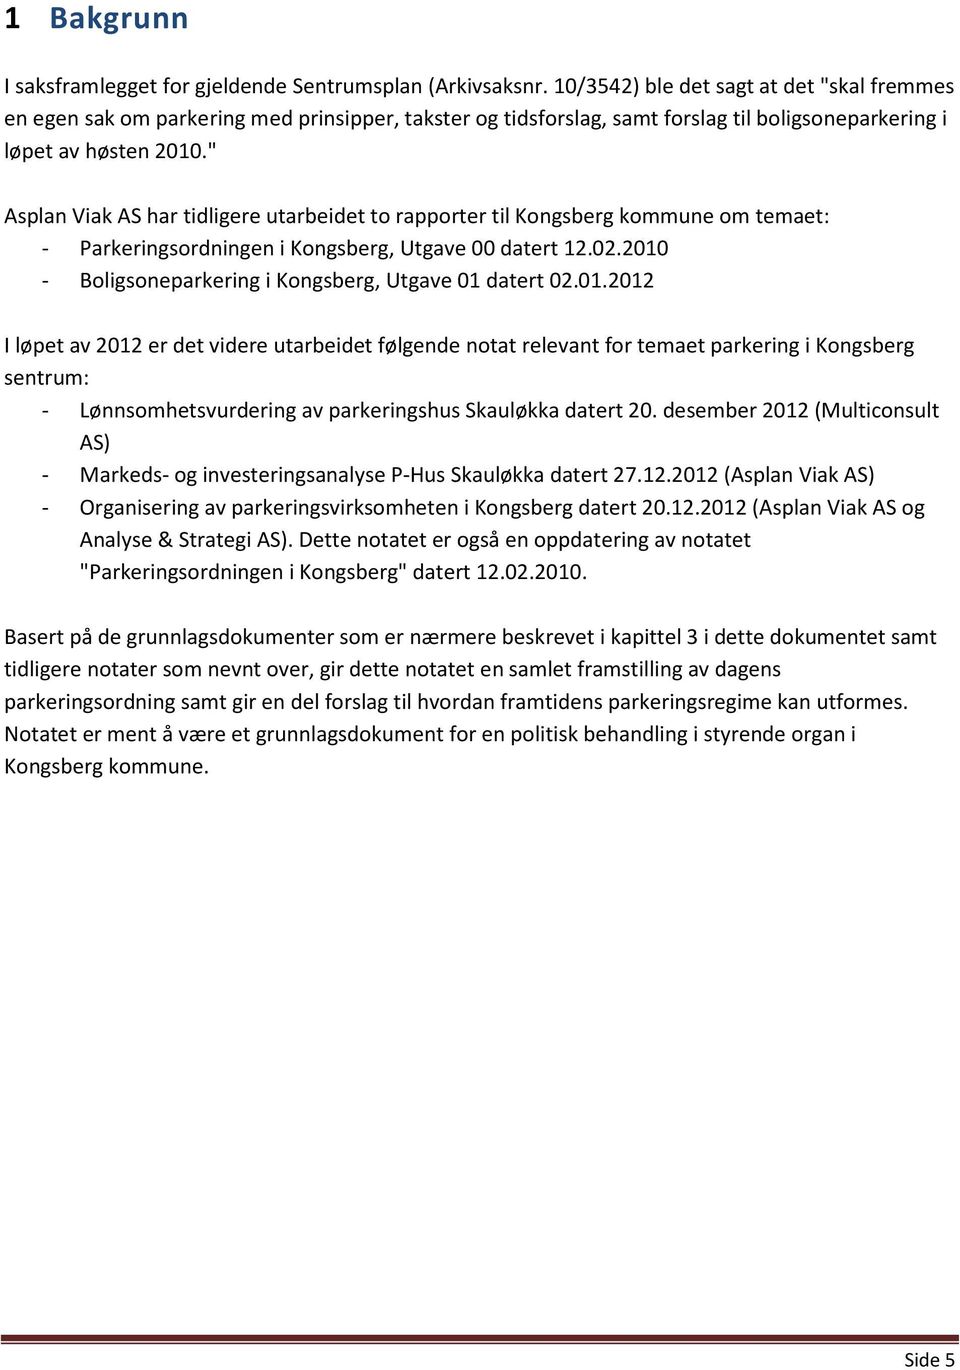 " Asplan Viak AS har tidligere utarbeidet to rapporter til Kongsberg kommune om temaet: - Parkeringsordningen i Kongsberg, Utgave 00 datert 12.02.